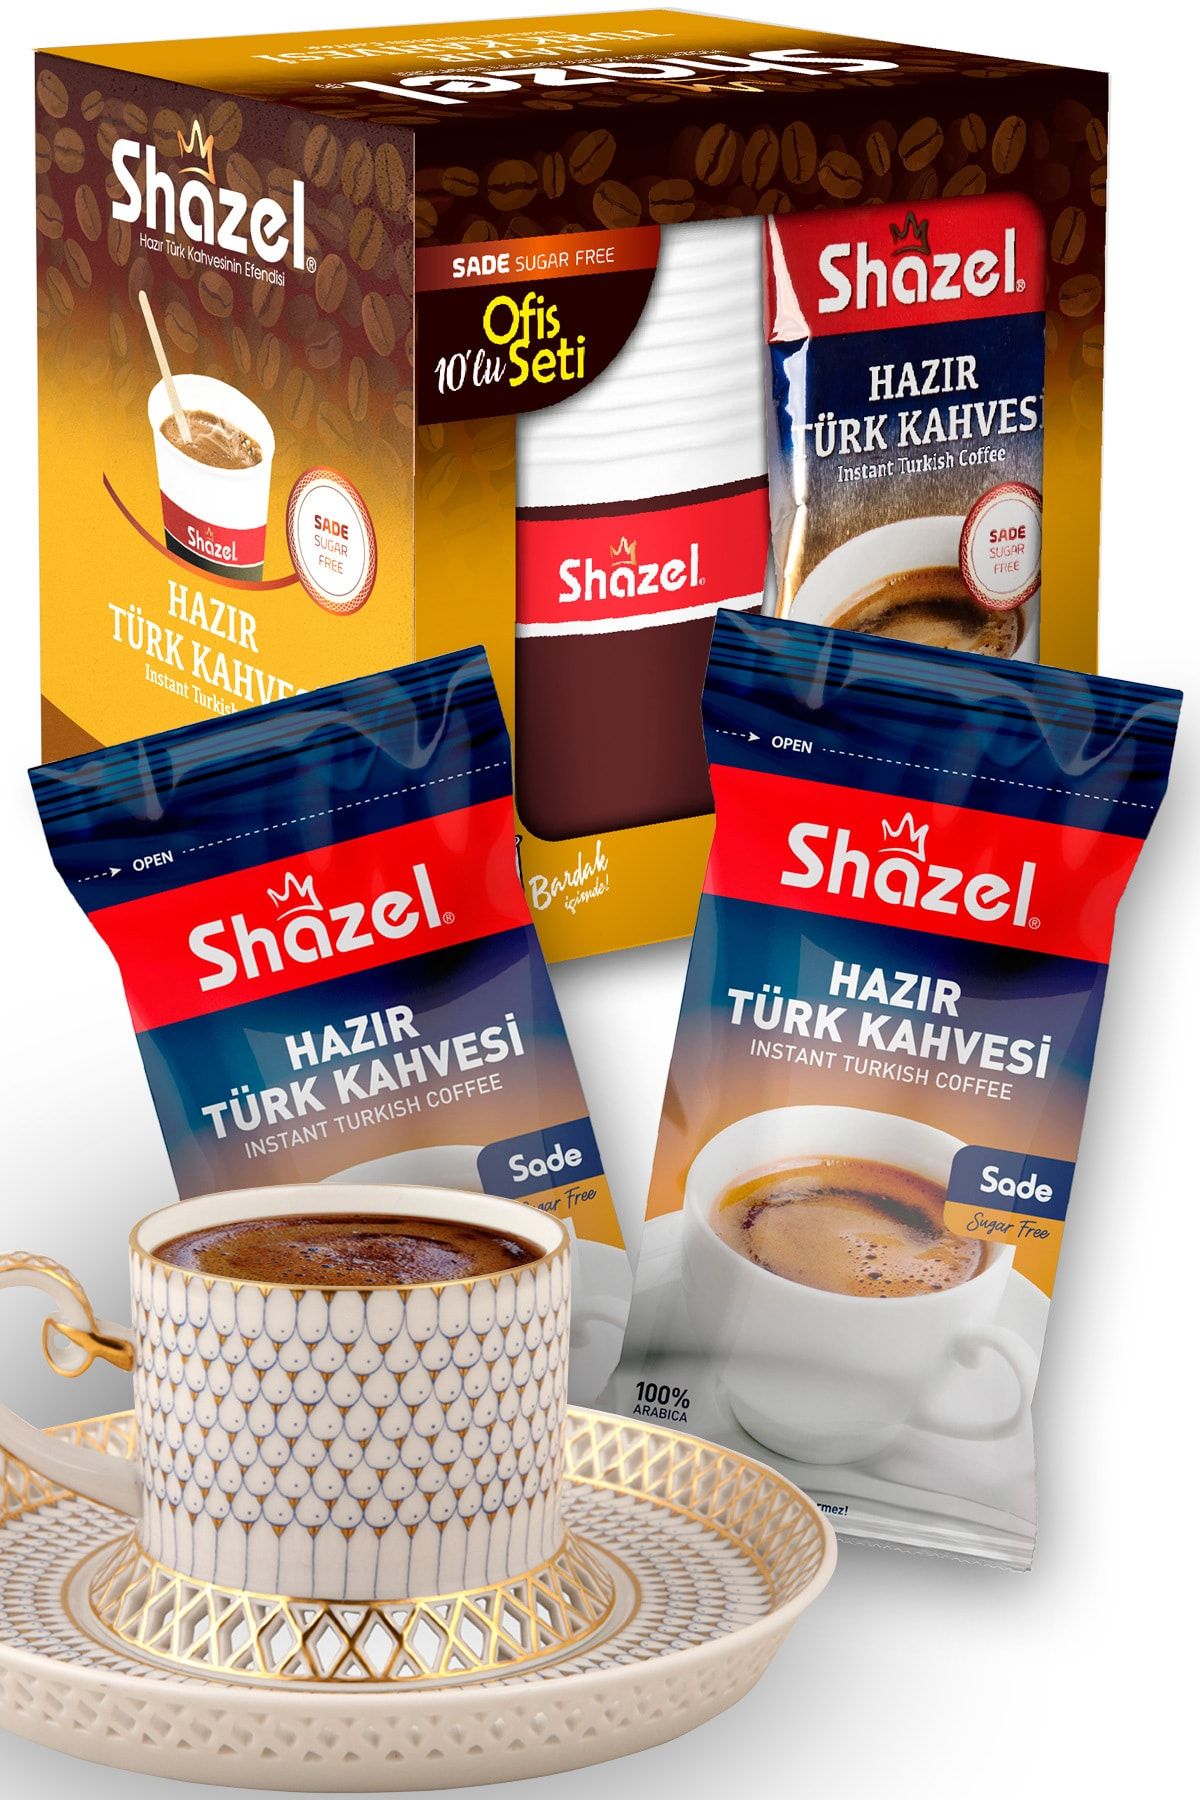 Shazel Sade Hazır Türk Kahvesi 40’lı Bardaklı Özel Set